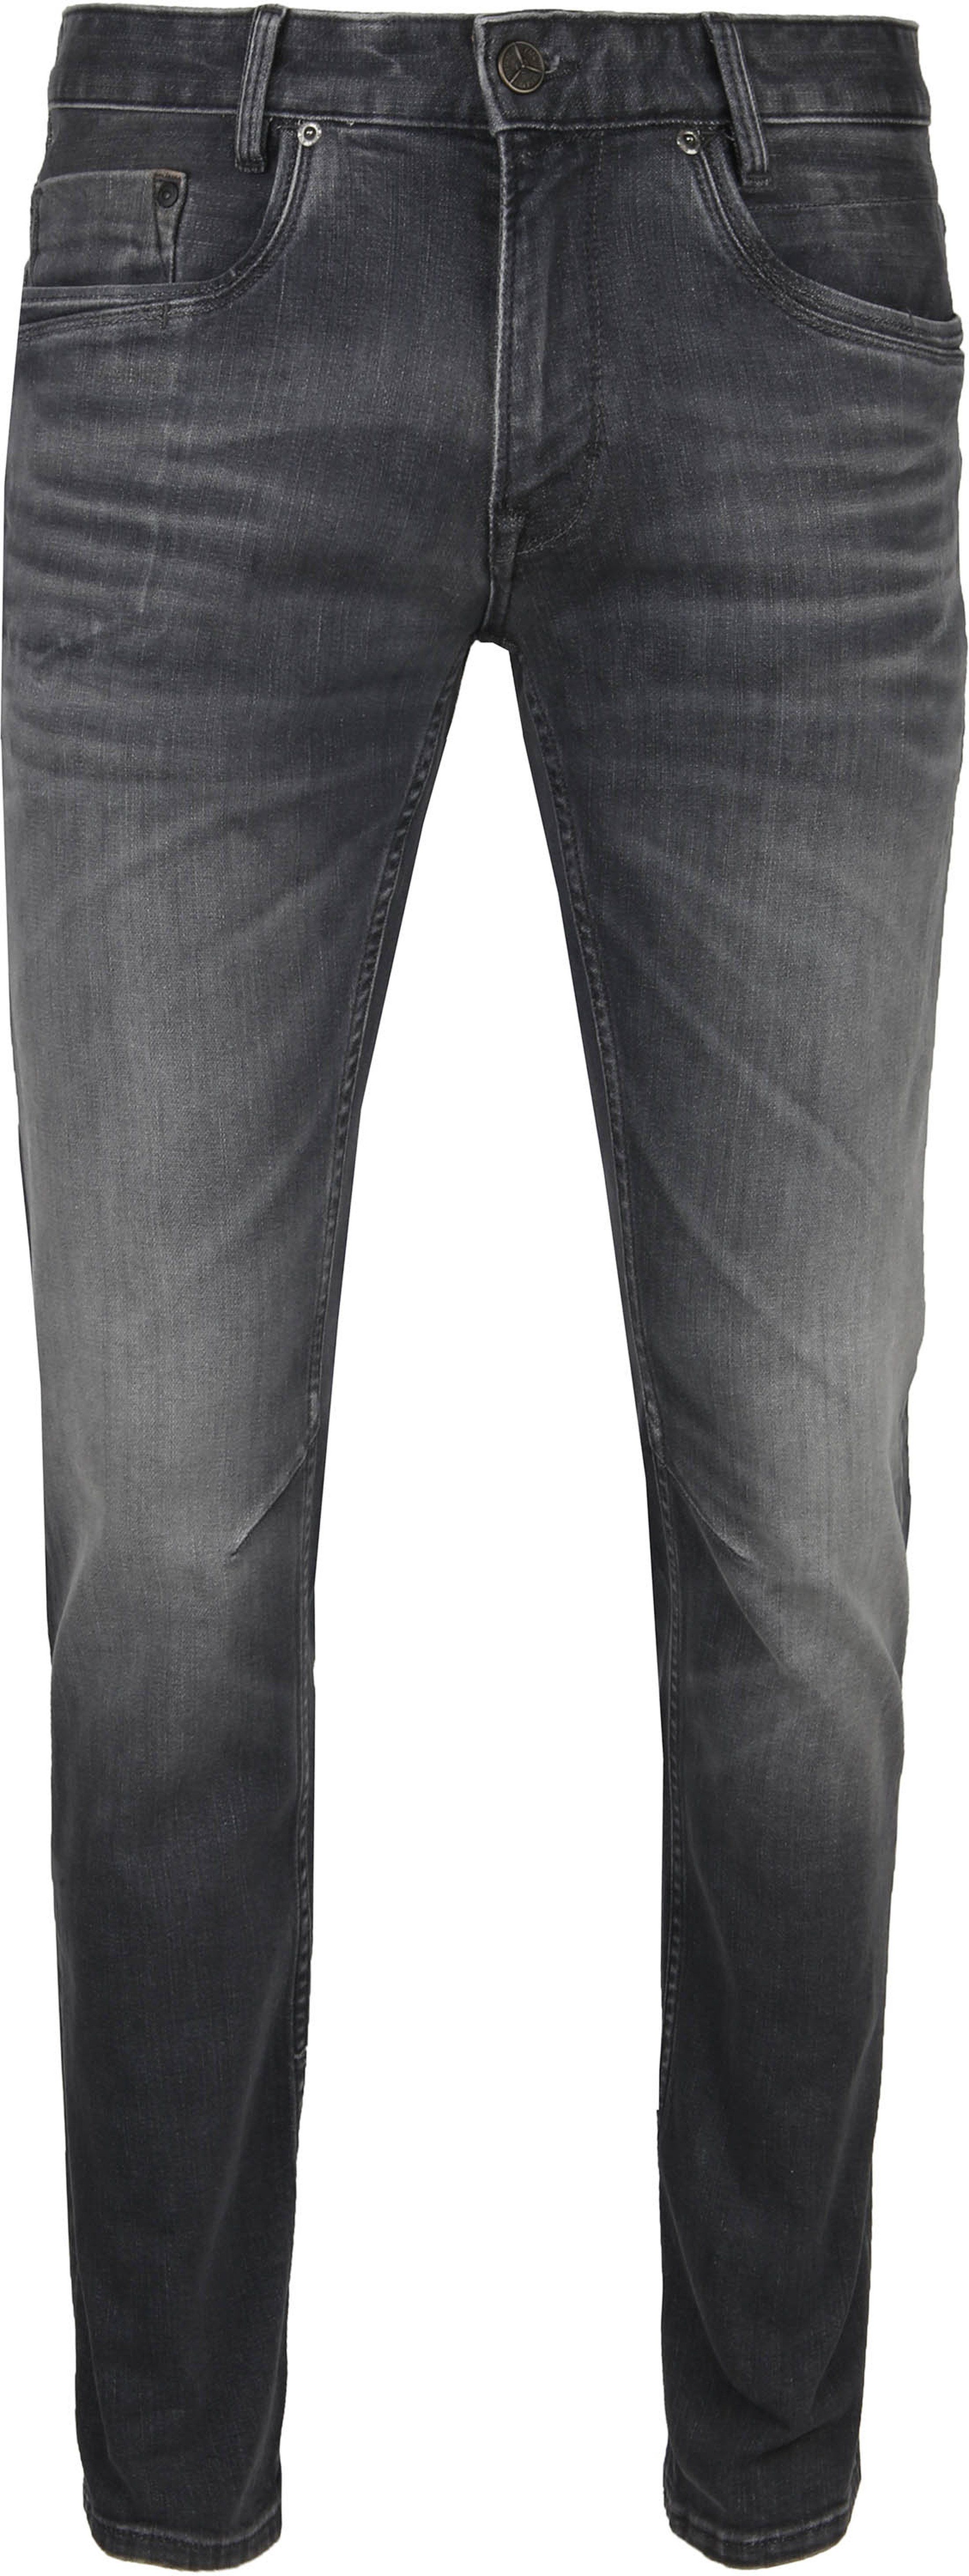 PME Legend Skymaster Jeans Grey size W 29